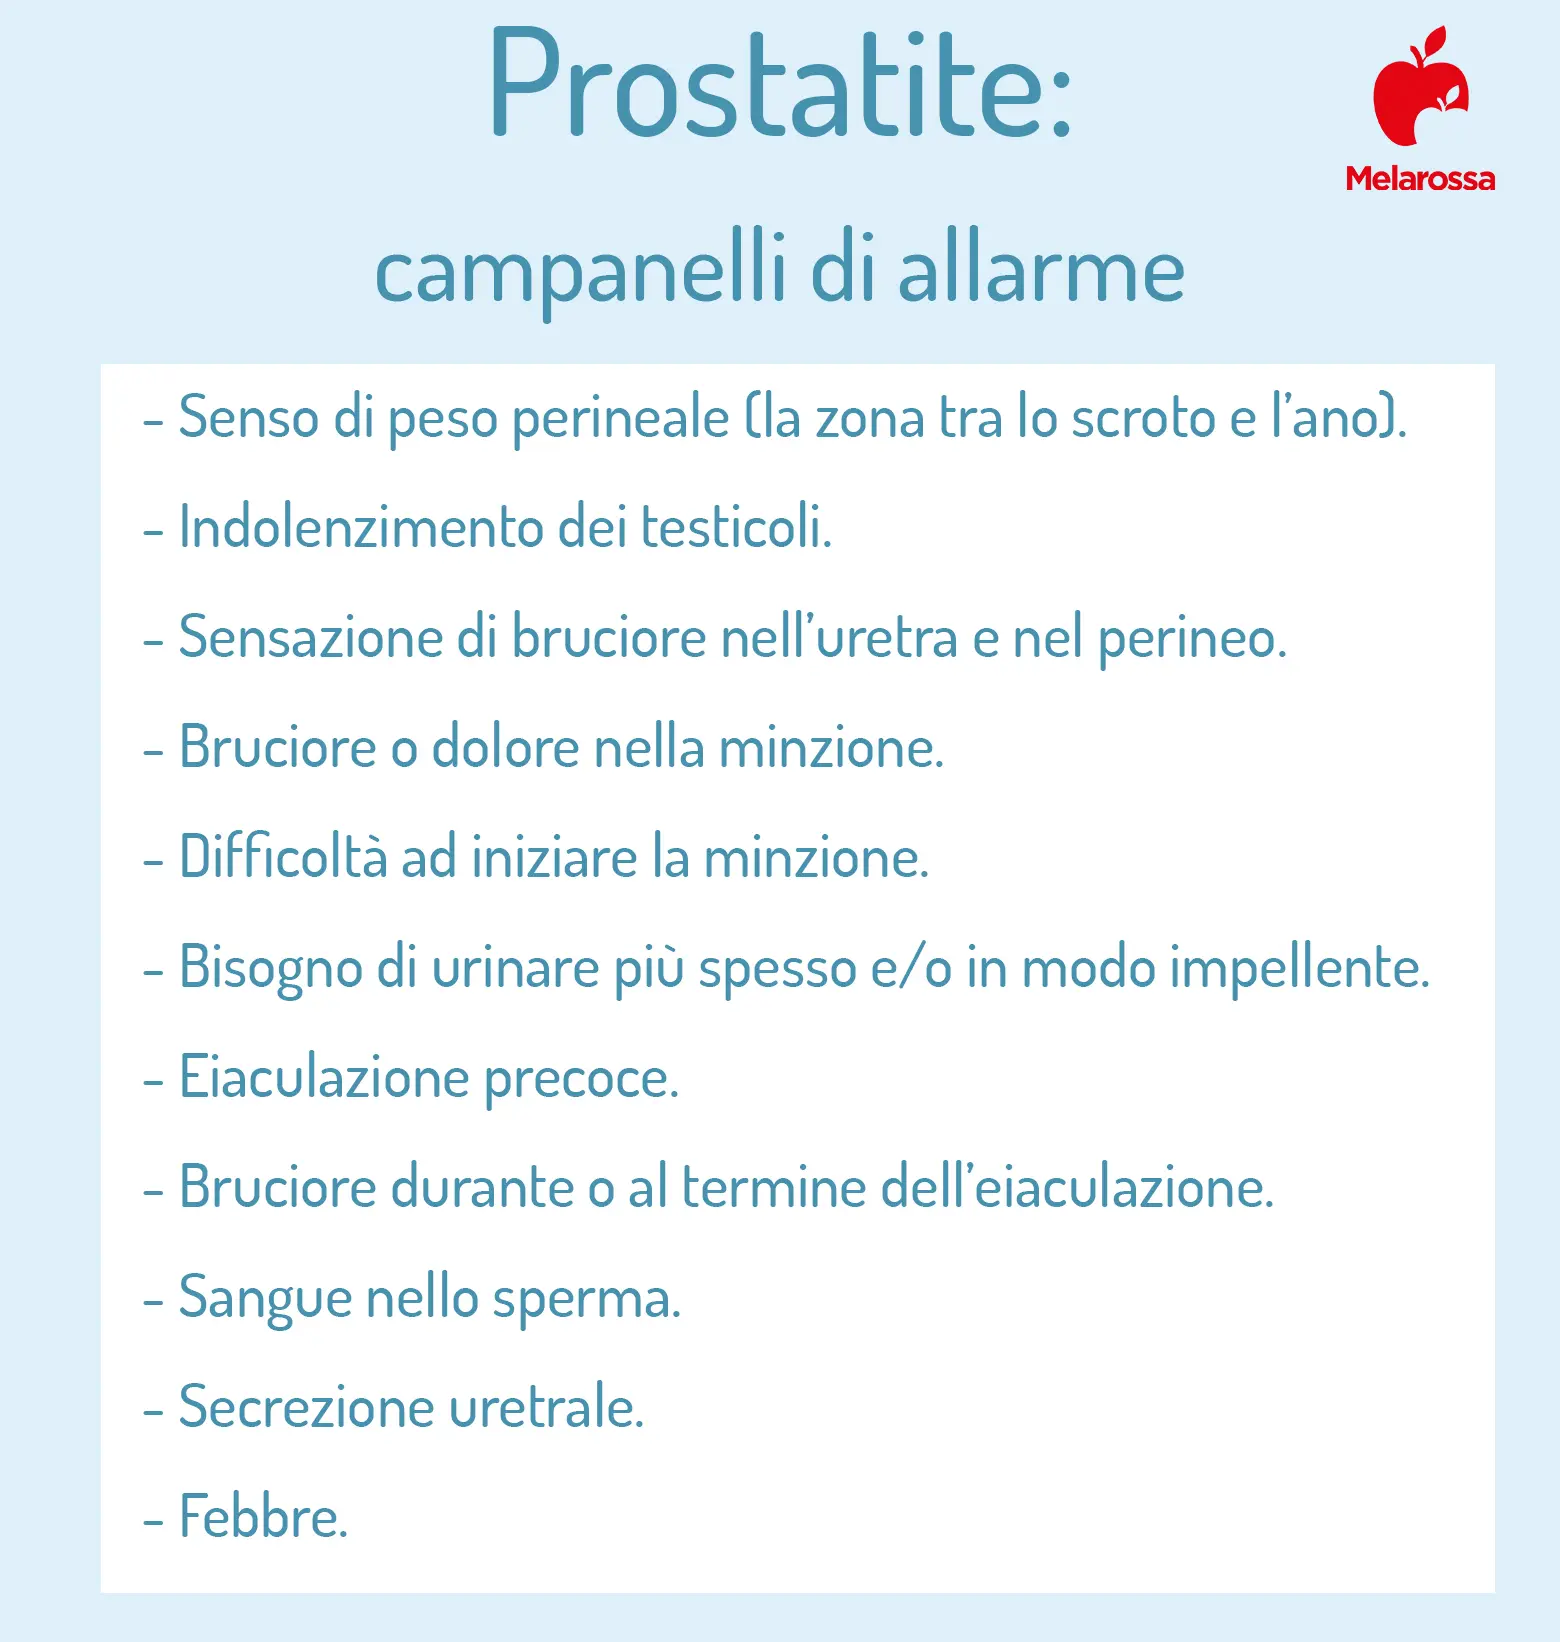 Probleme De Prostata La Barbati - Riempire Lanalisi Prostata